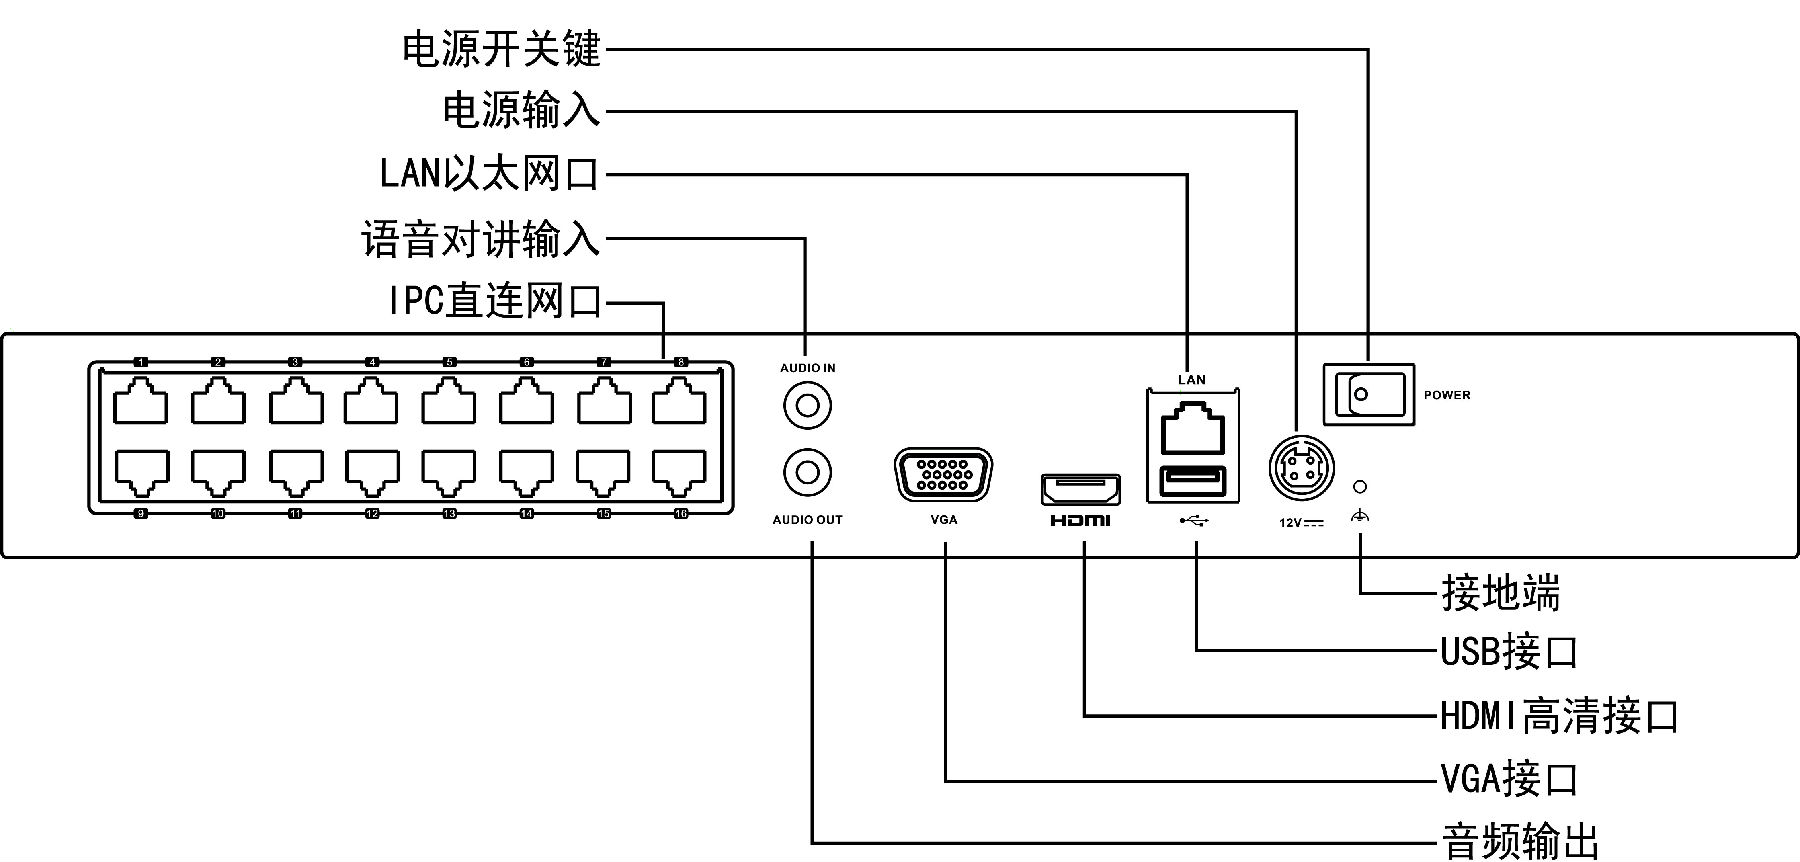 海康威视DS-7832N网络硬盘录像机接口图解说明